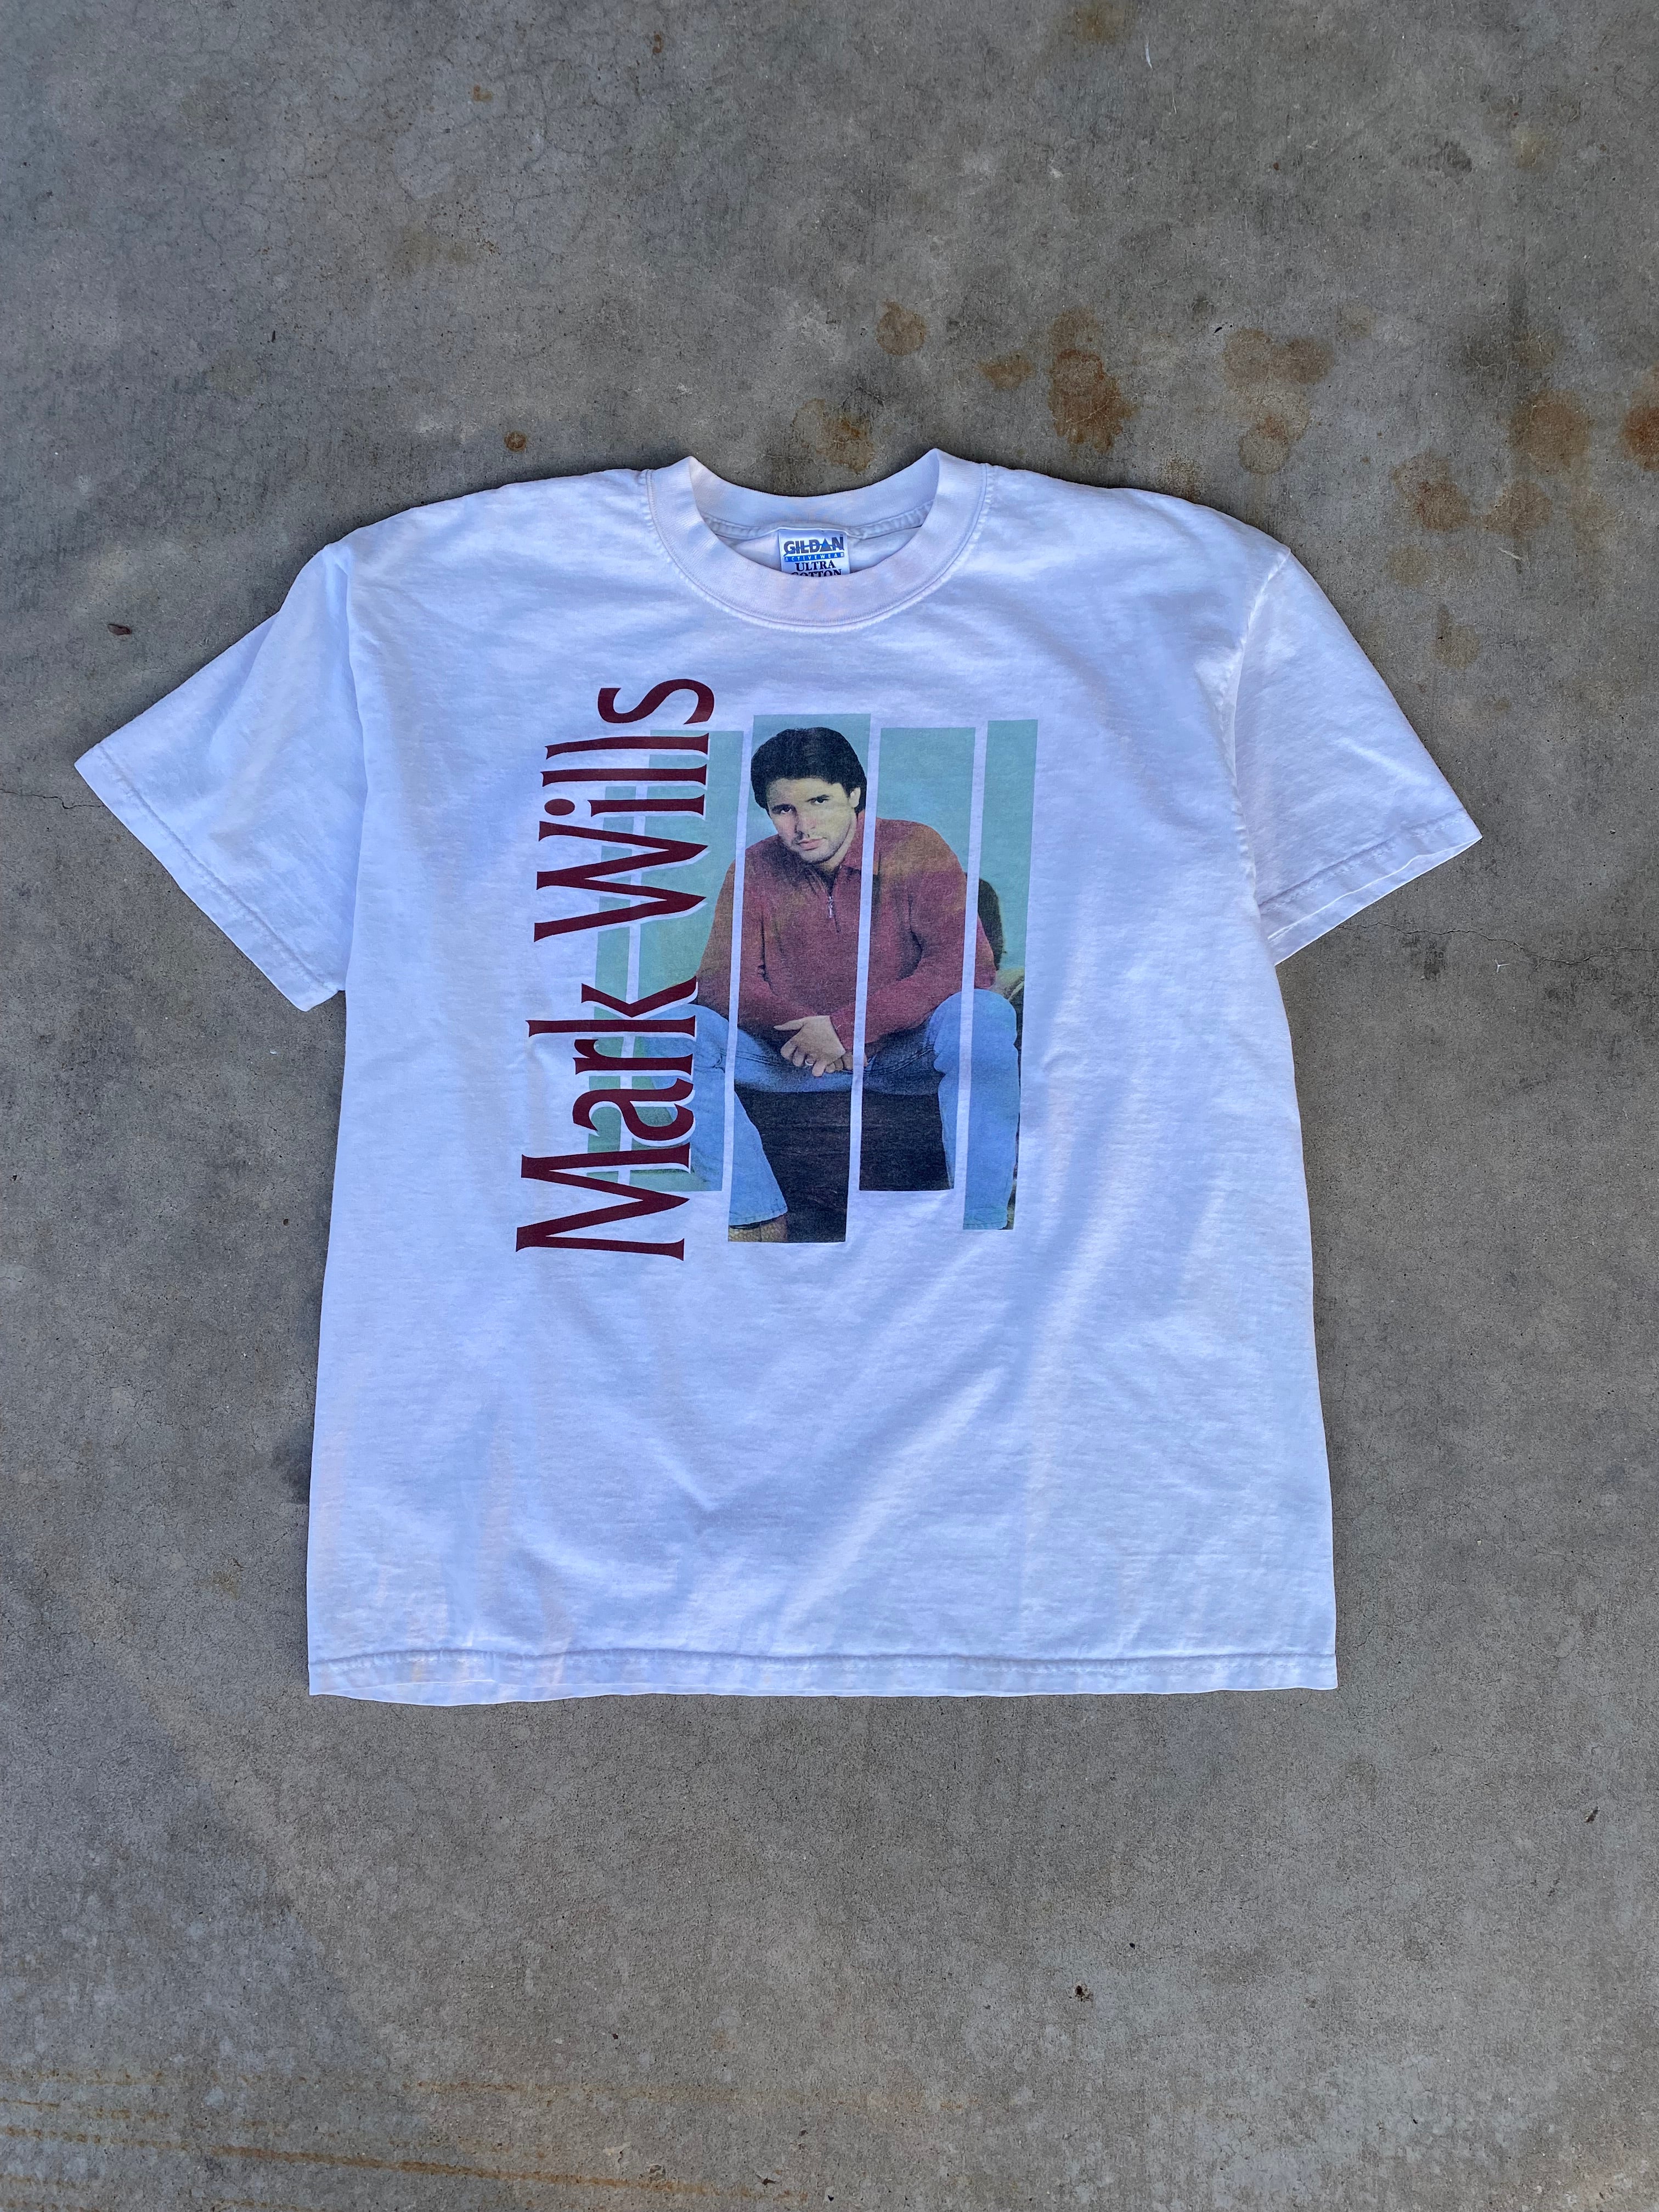 1998 Mark Wills "Wish You Were Here" T-Shirt